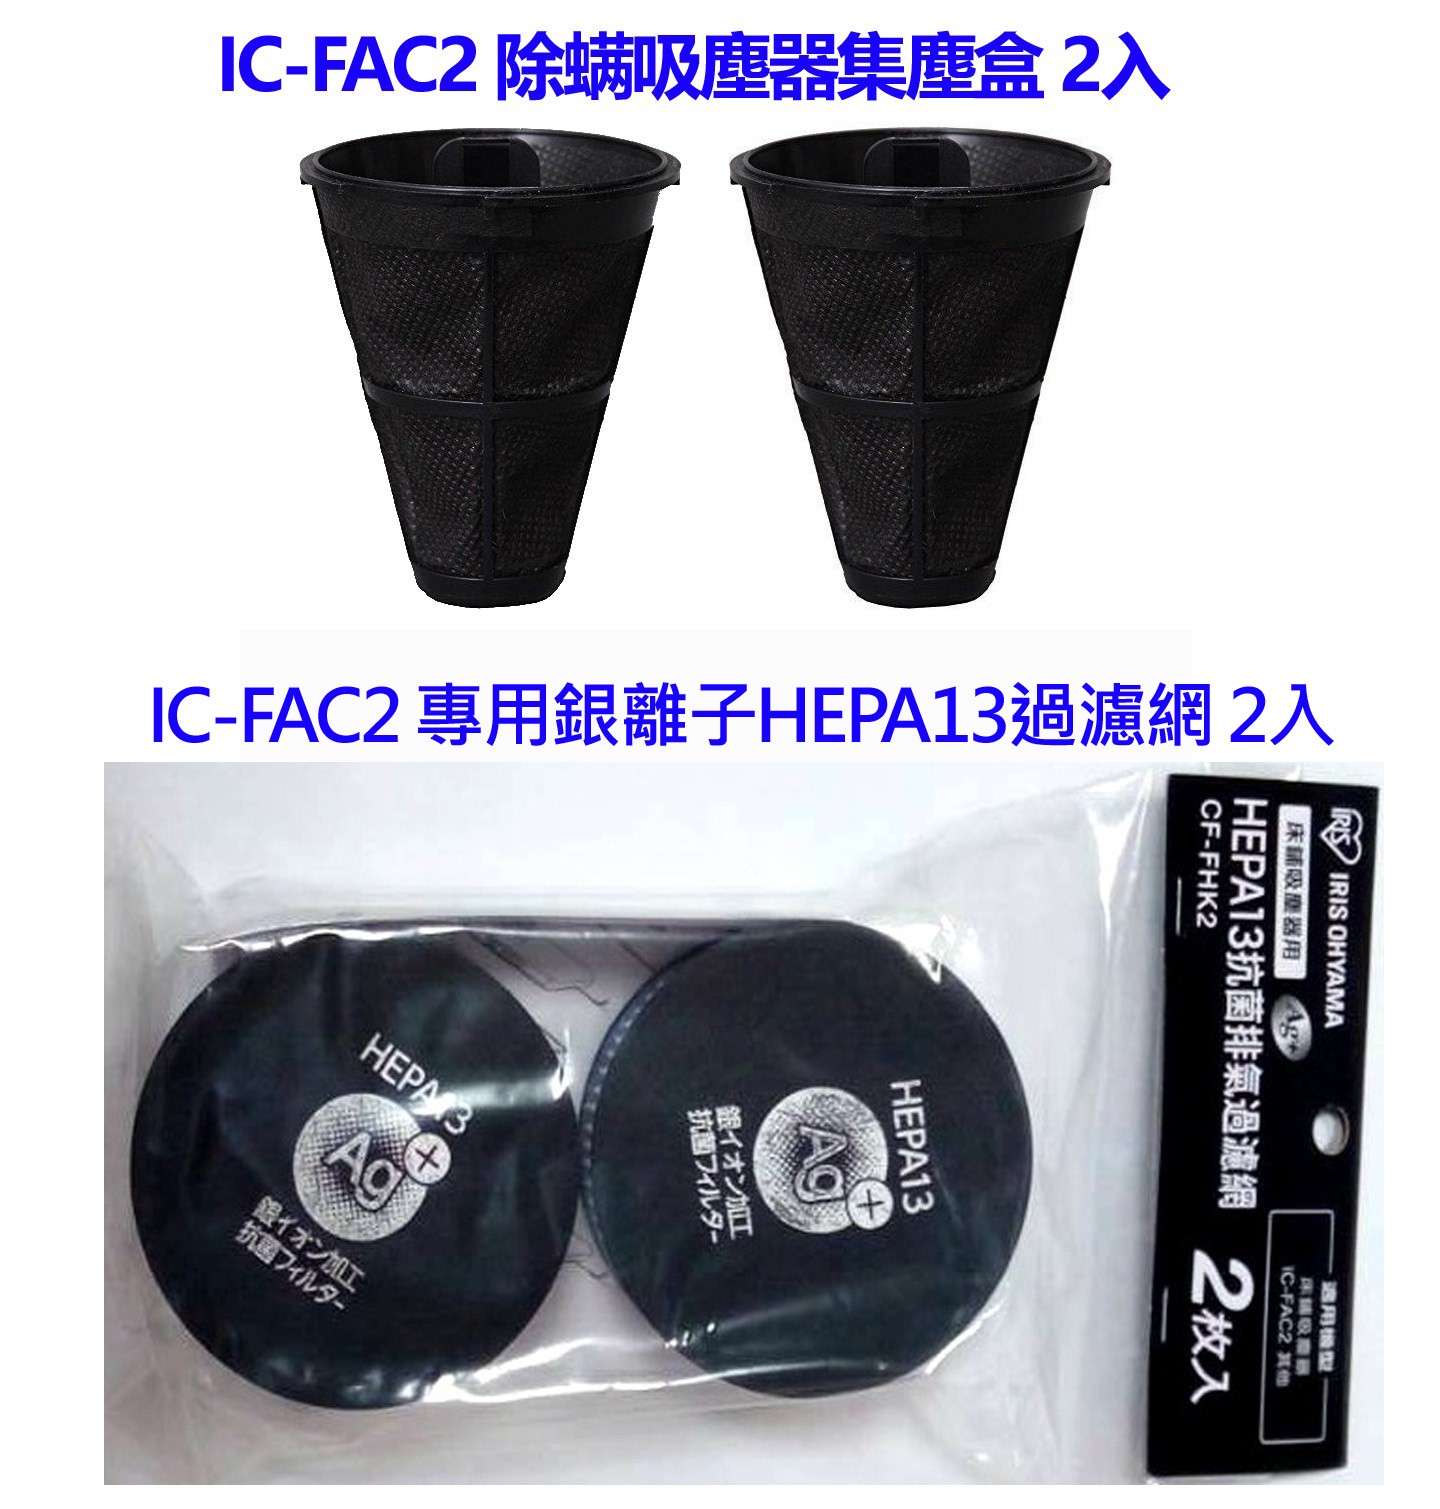 日本 IRIS 除蟎吸塵器 IC-FAC2 配件組 (集塵盒2入 銀離子HEPA13過濾網 2入) 